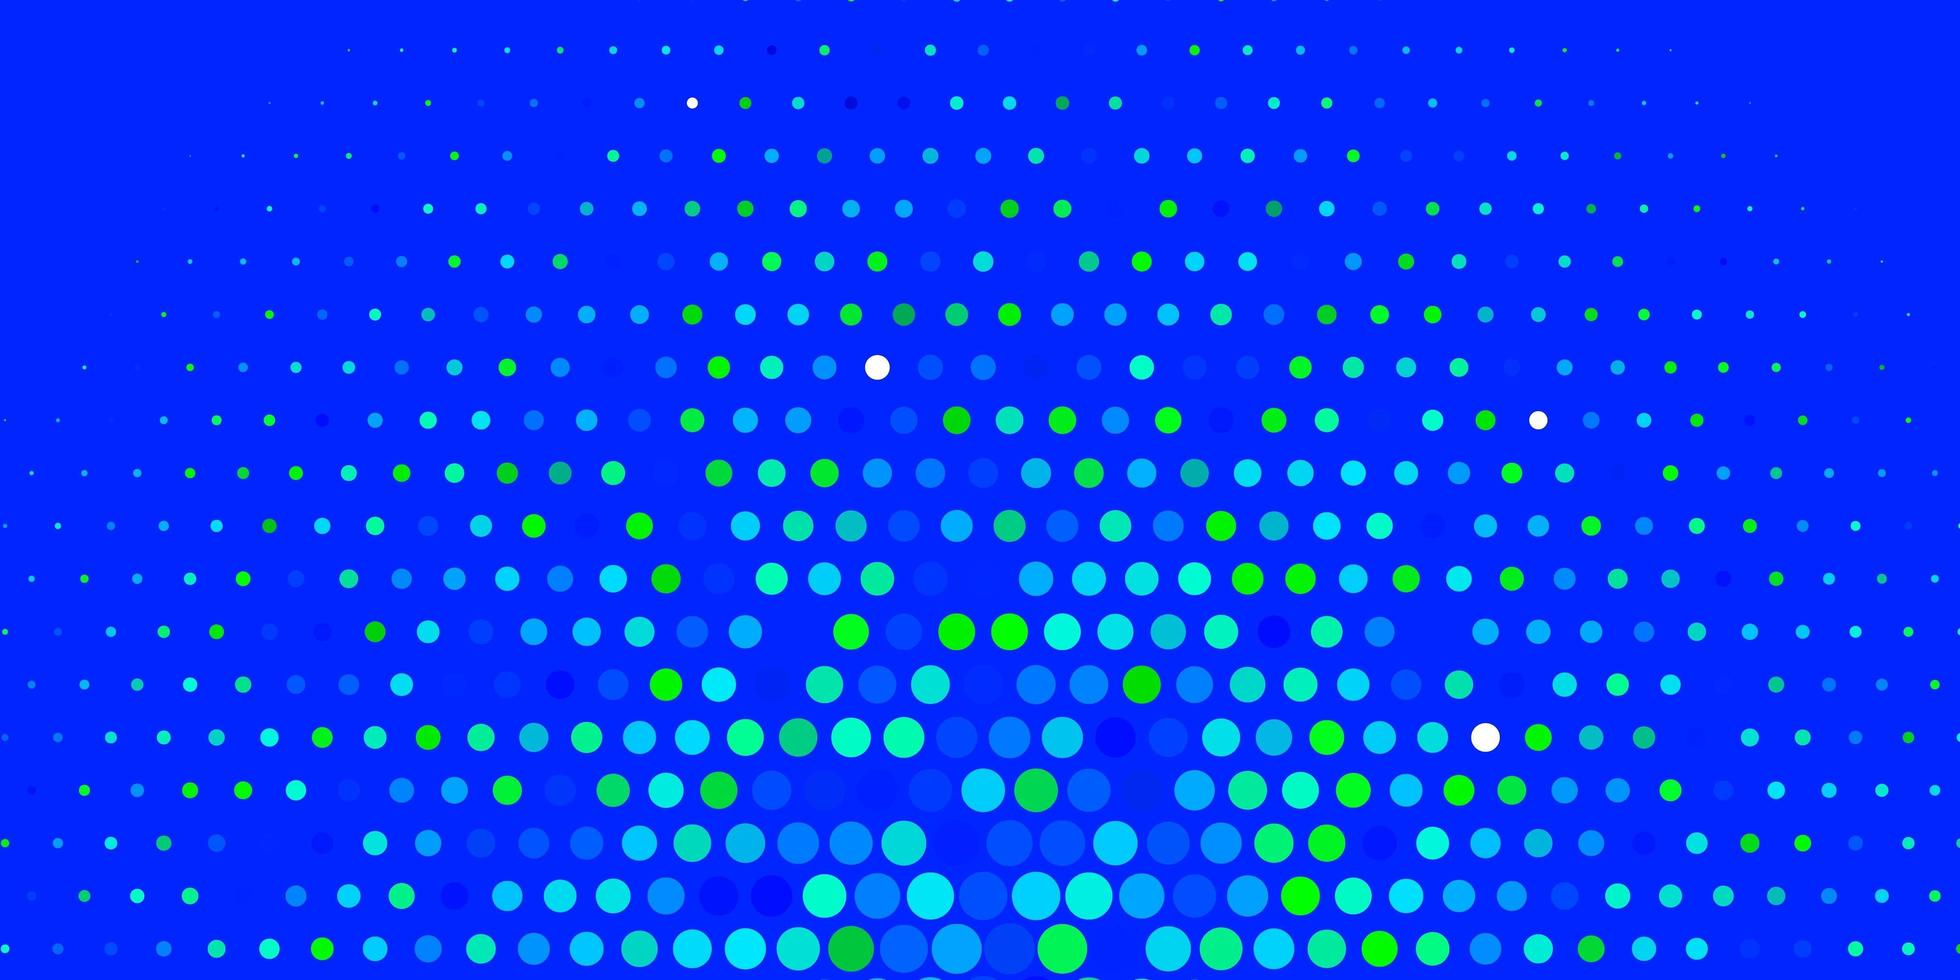 sfondo vettoriale azzurro, verde con cerchi. illustrazione astratta moderna con forme di cerchio colorato. design per i tuoi annunci pubblicitari.